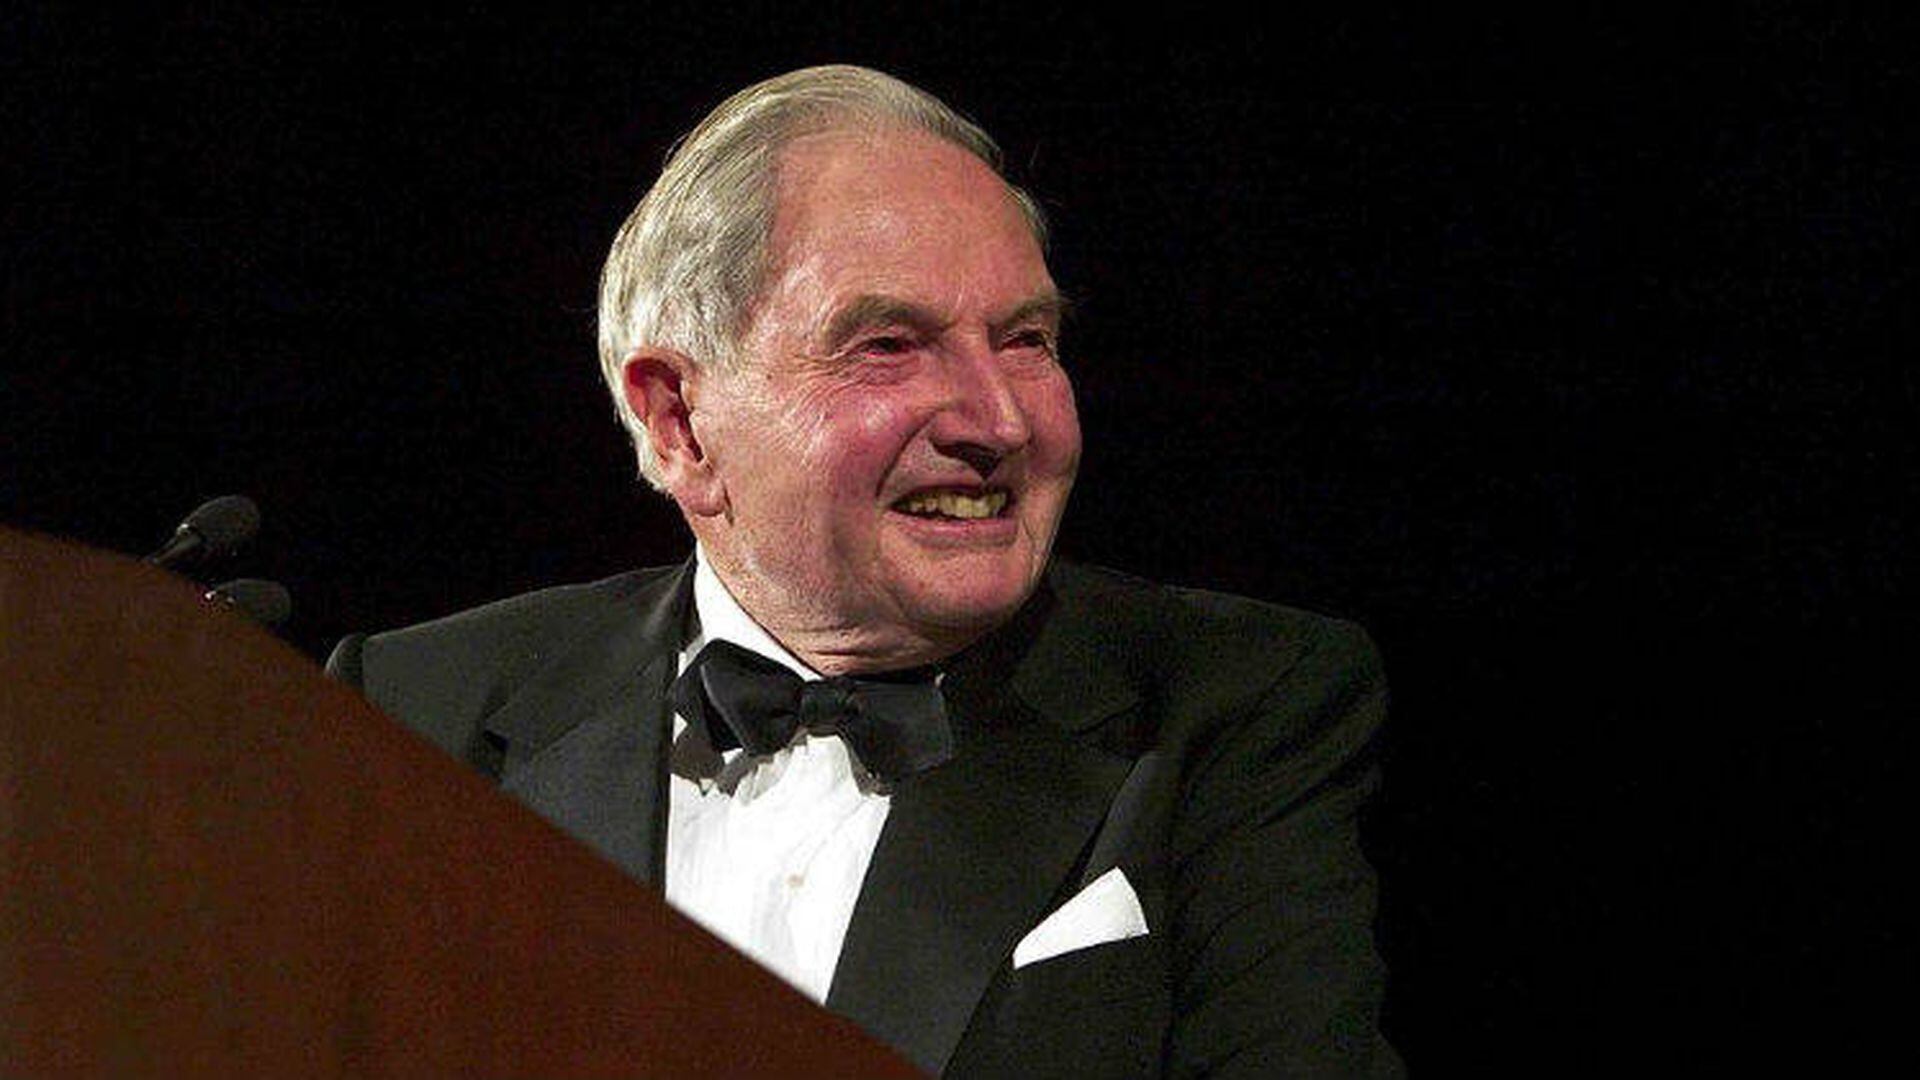 Cuán rica es realmente la familia Rockefeller, sinónimo de la opulencia en  EE.UU. y el resto del mundo? - BBC News Mundo